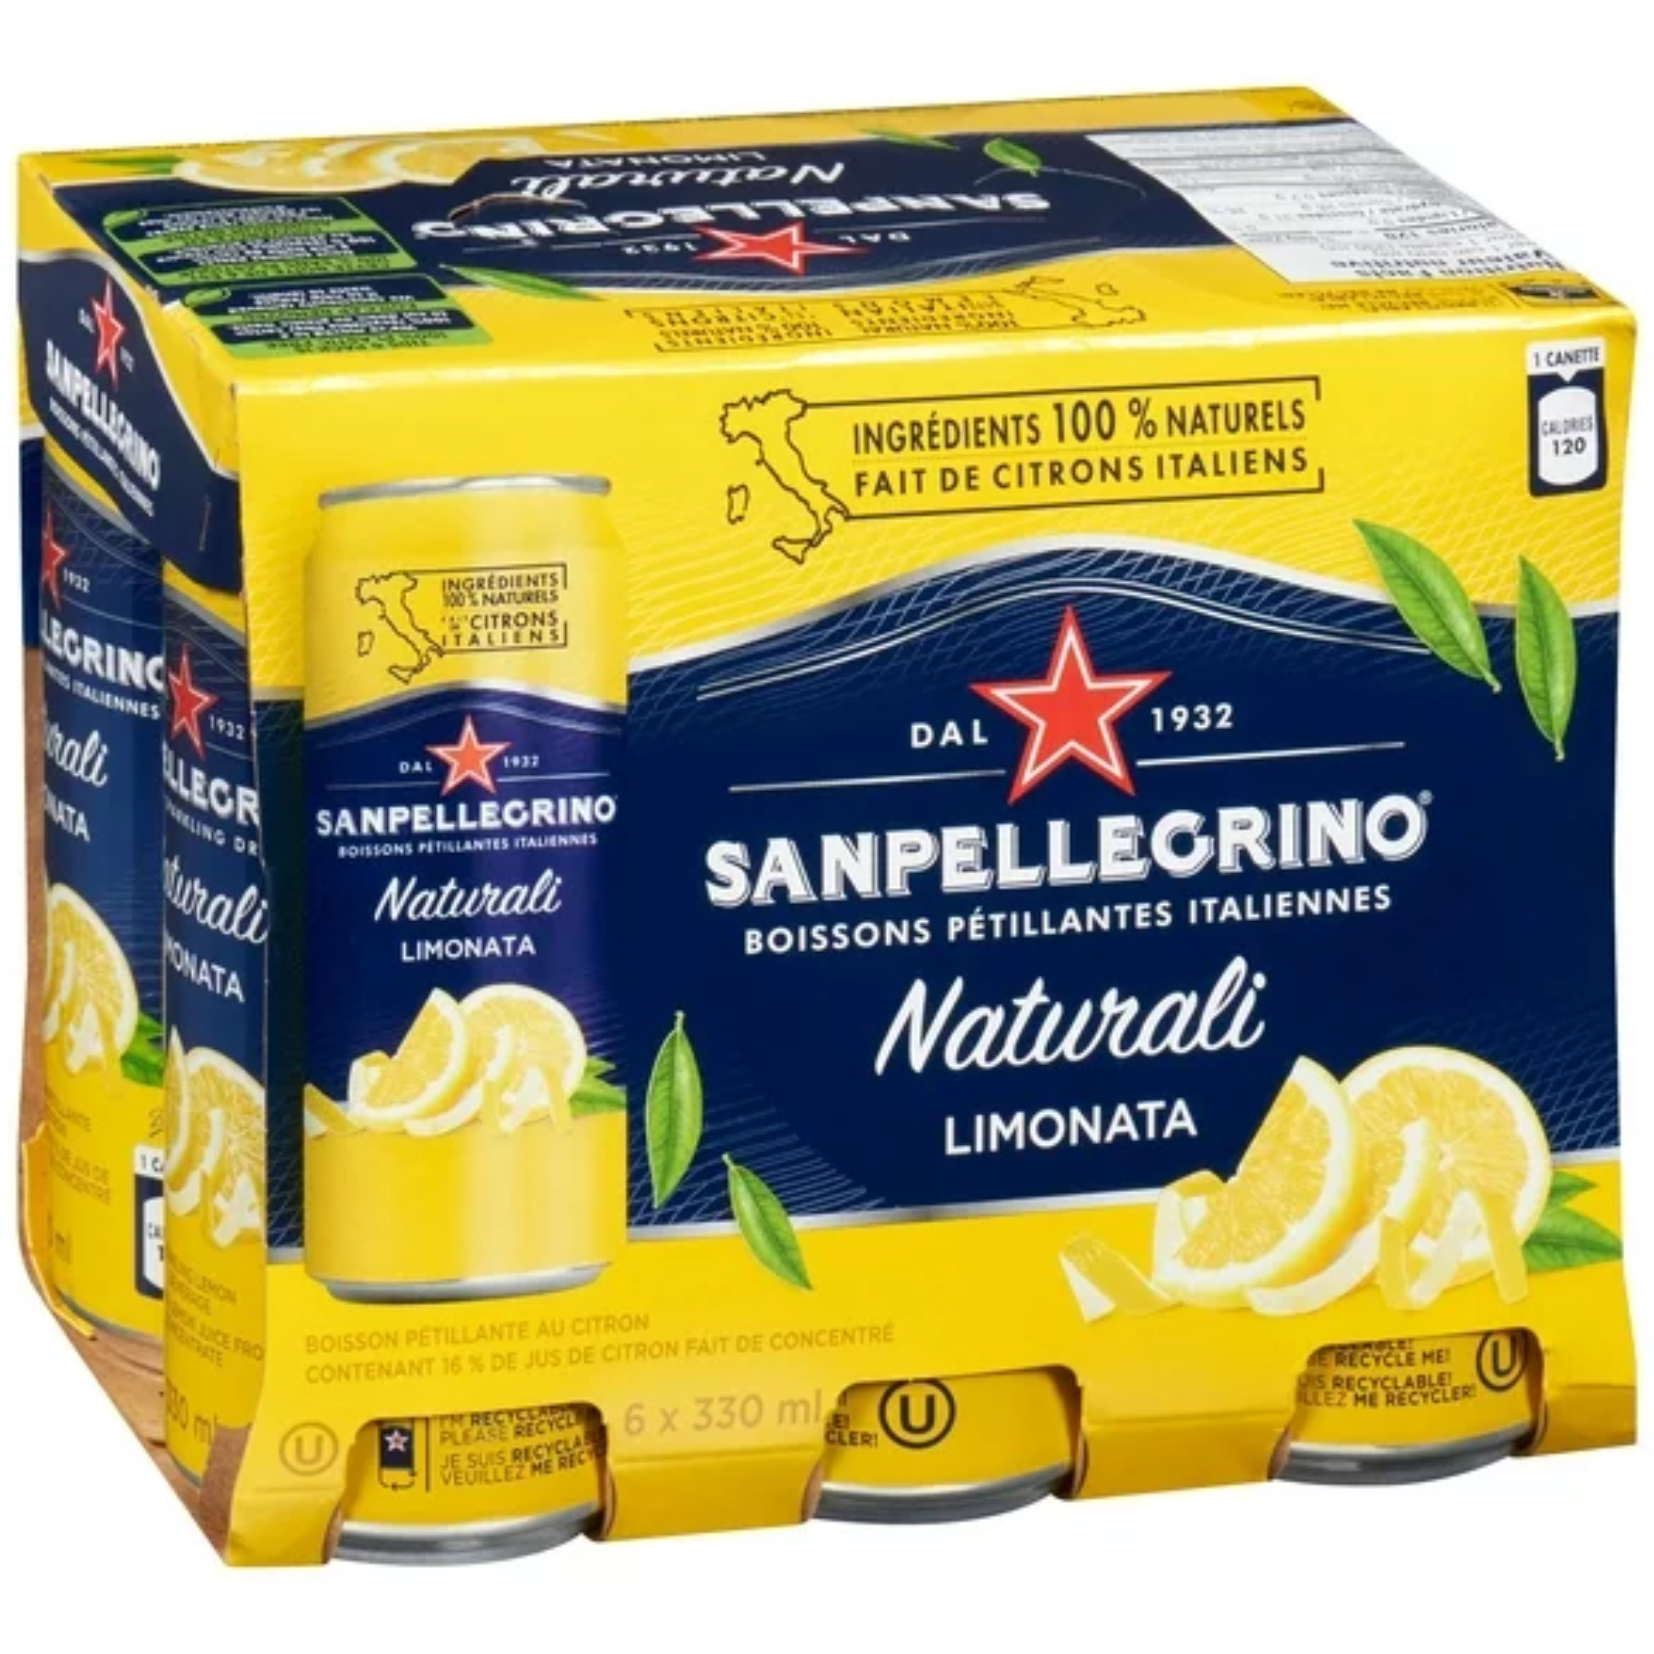 San Pellegrino Naturali Limonata Sparkling Lemon Beverage 330ml x 6